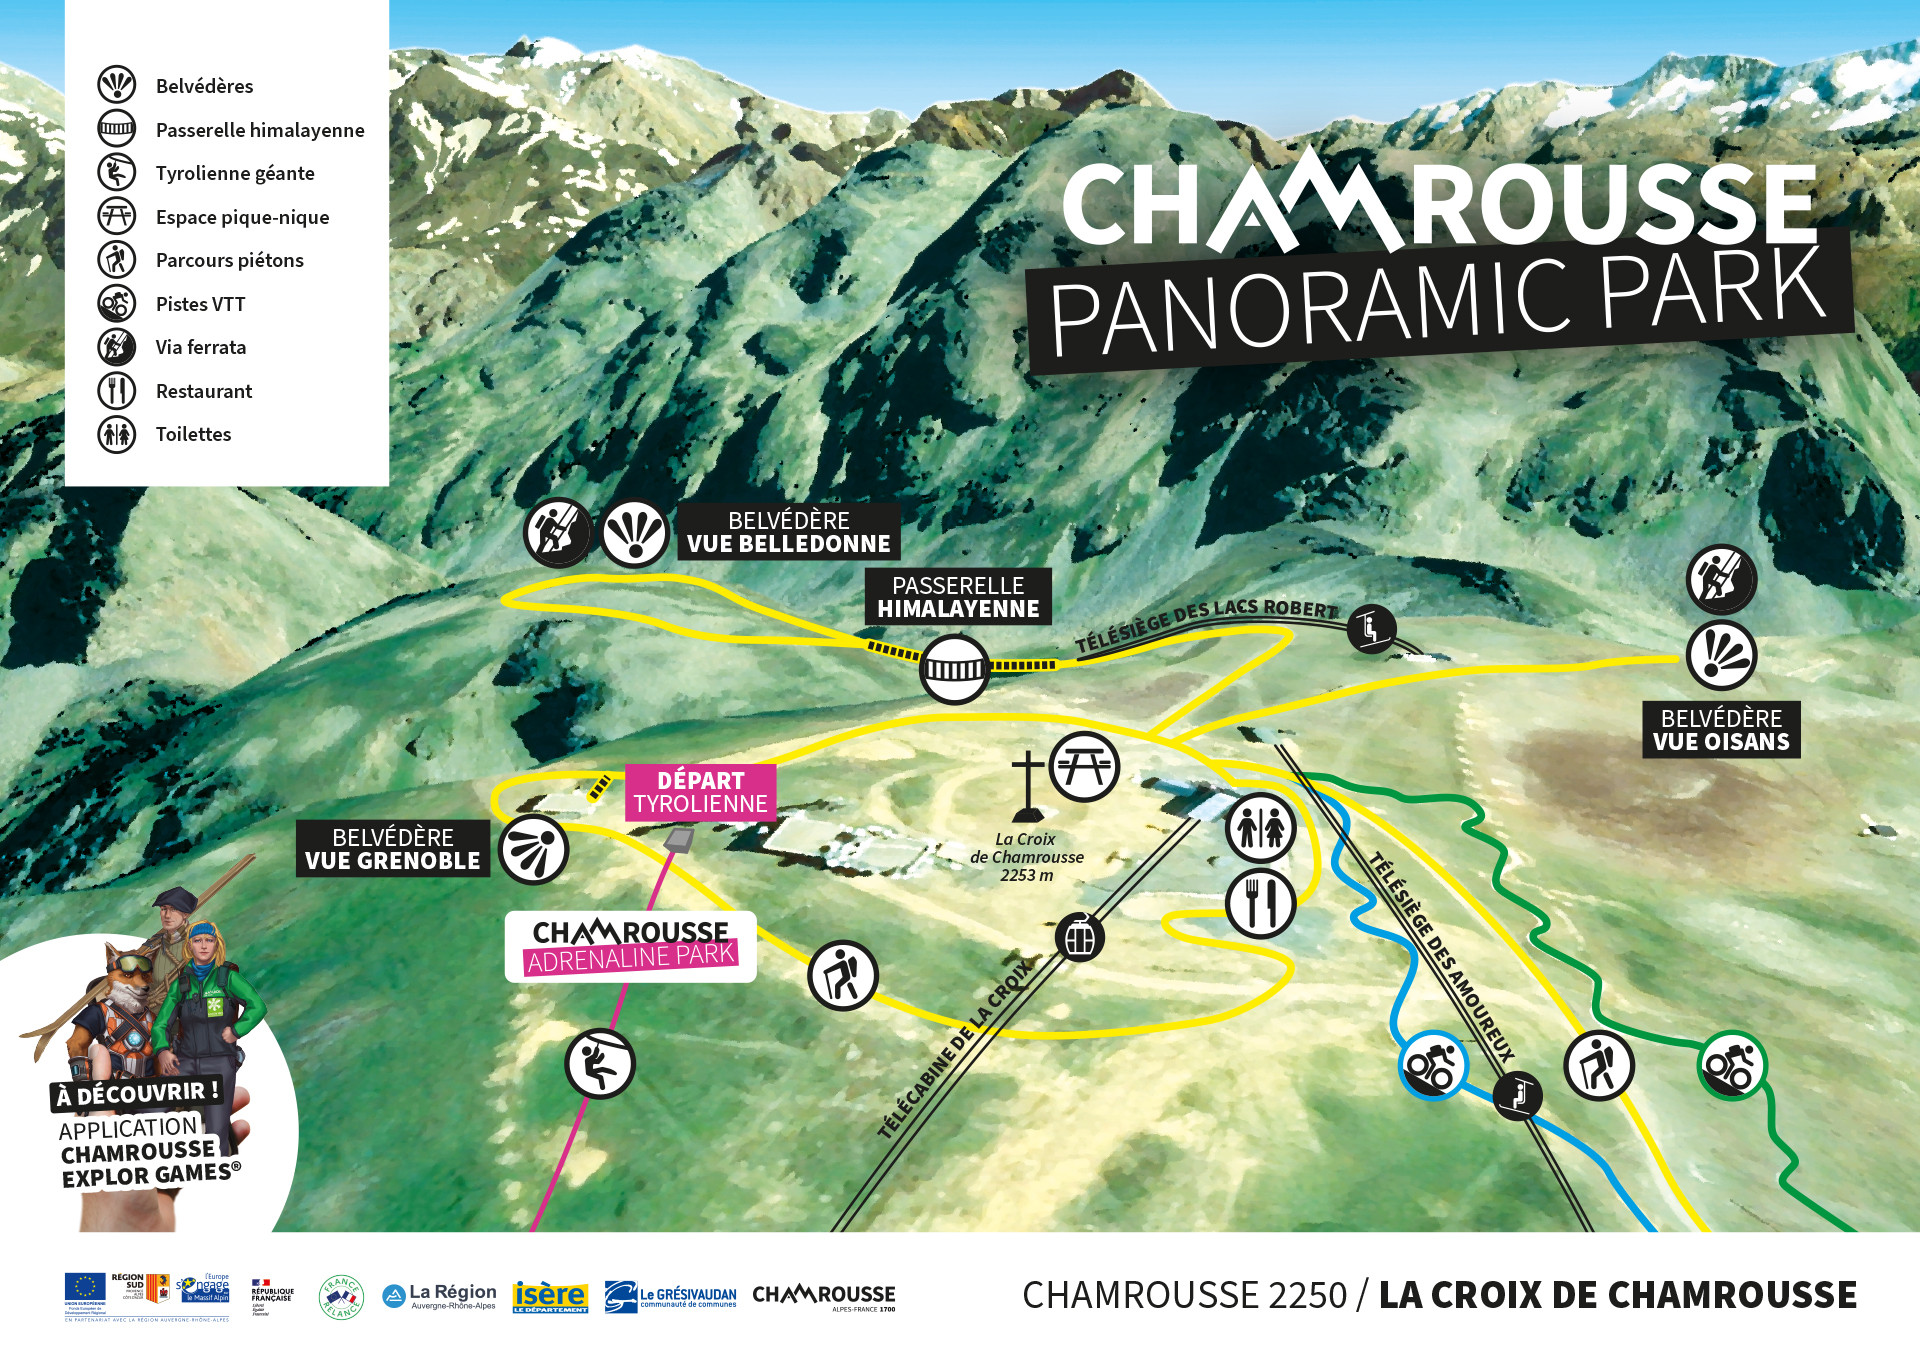 Croix de Chamrousse activities and facilities in summer